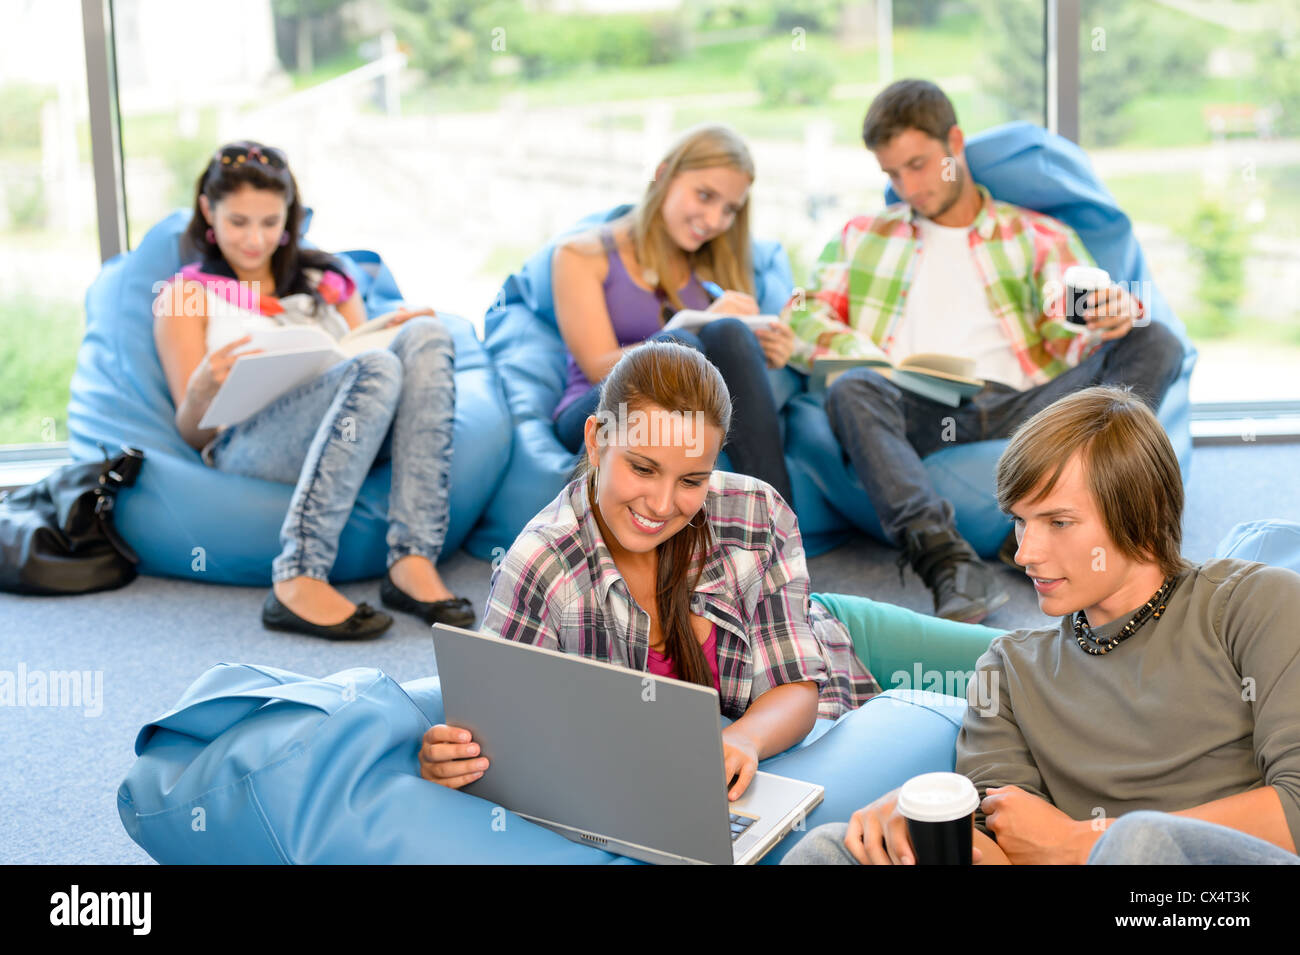 Estudiantes sentados en bolsas de semillas sala de estudio feliz adolescentes de secundaria Foto de stock